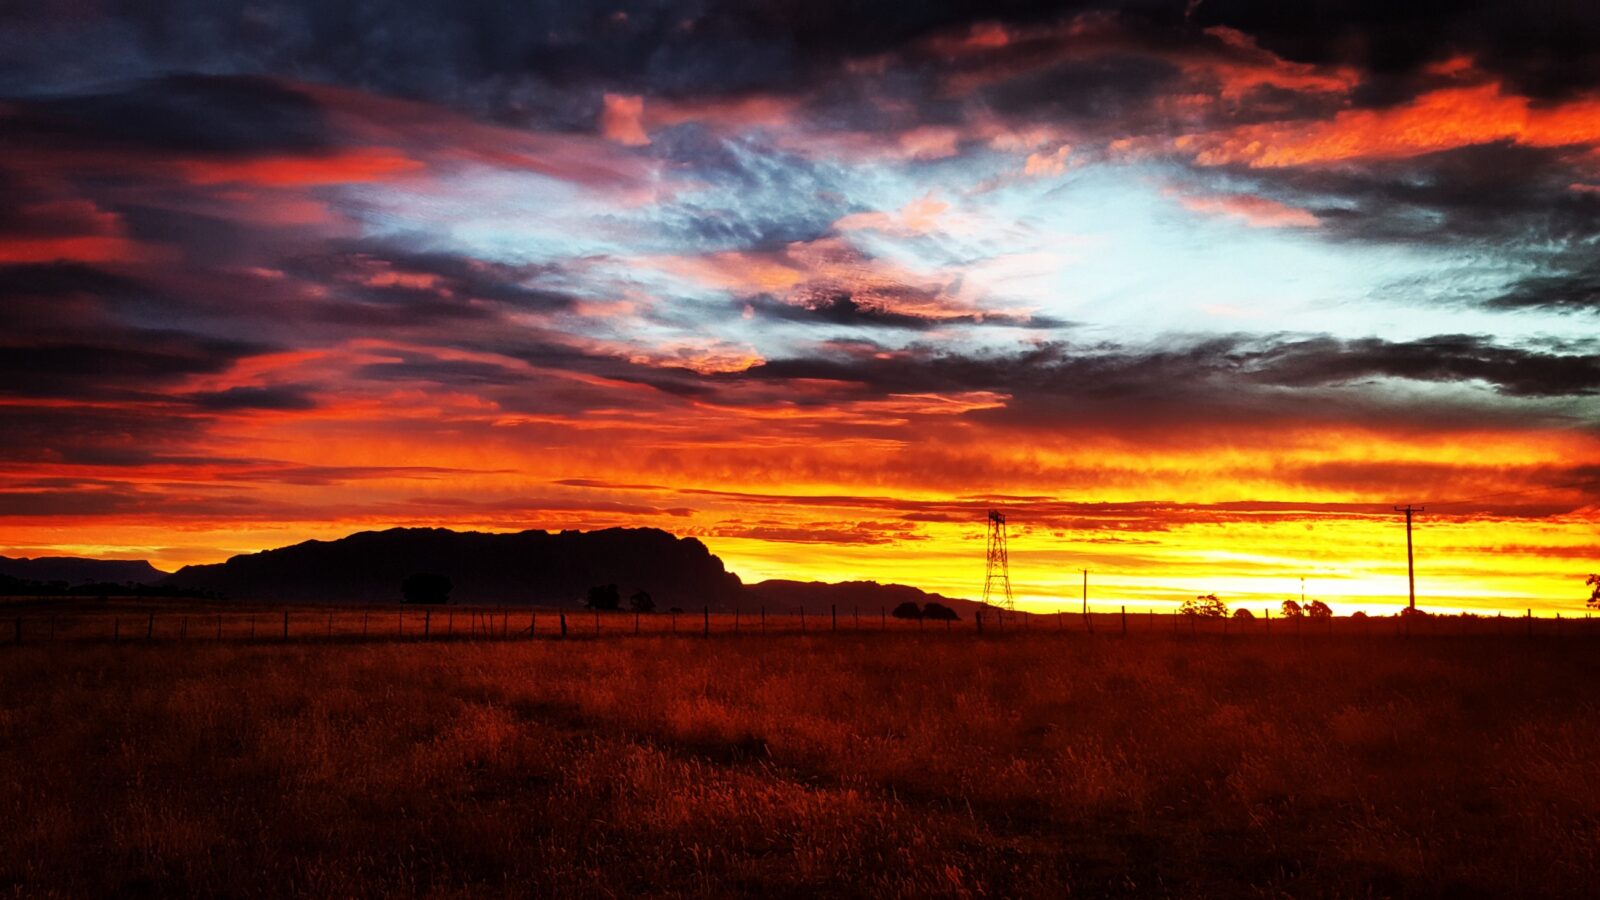 Stunning sunset photo across Mount Roland in Tasmania